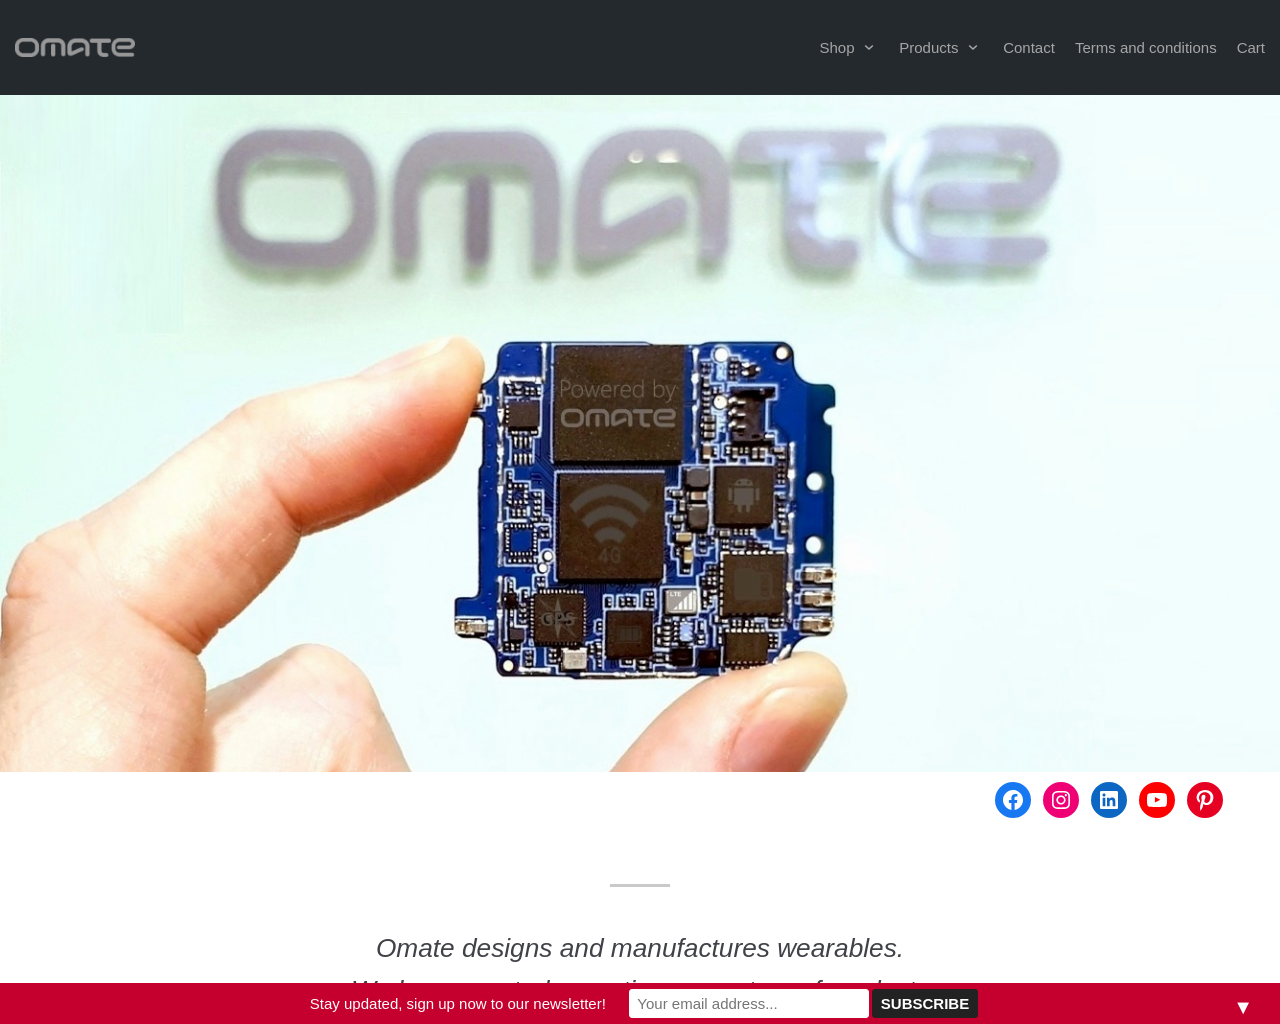 omate.com